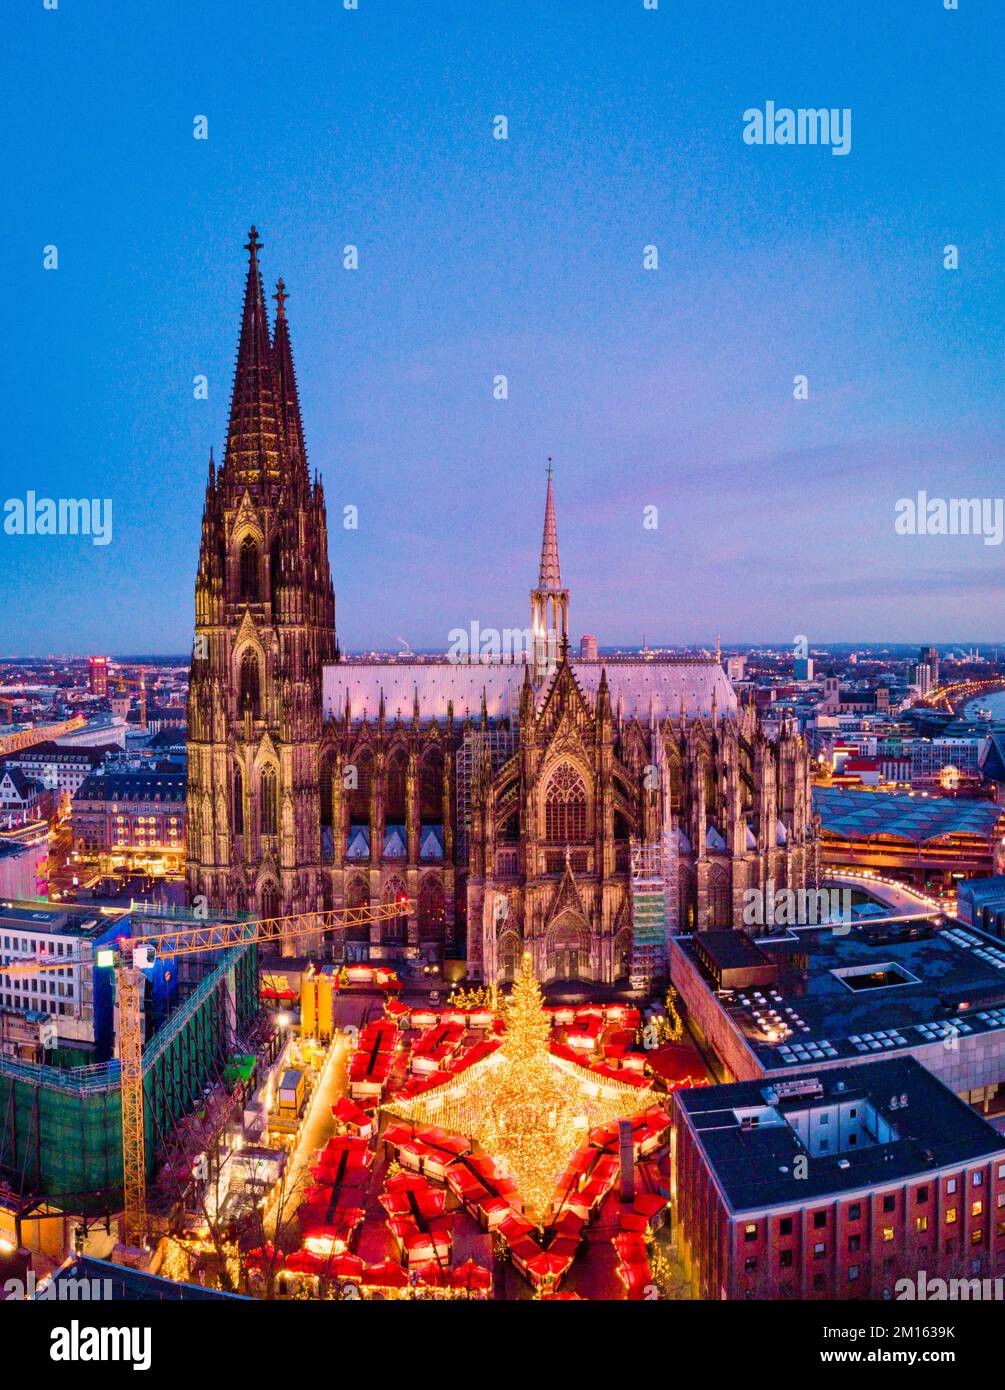 Cologne Allemagne vue du marché de Noël de drone Banque D'Images